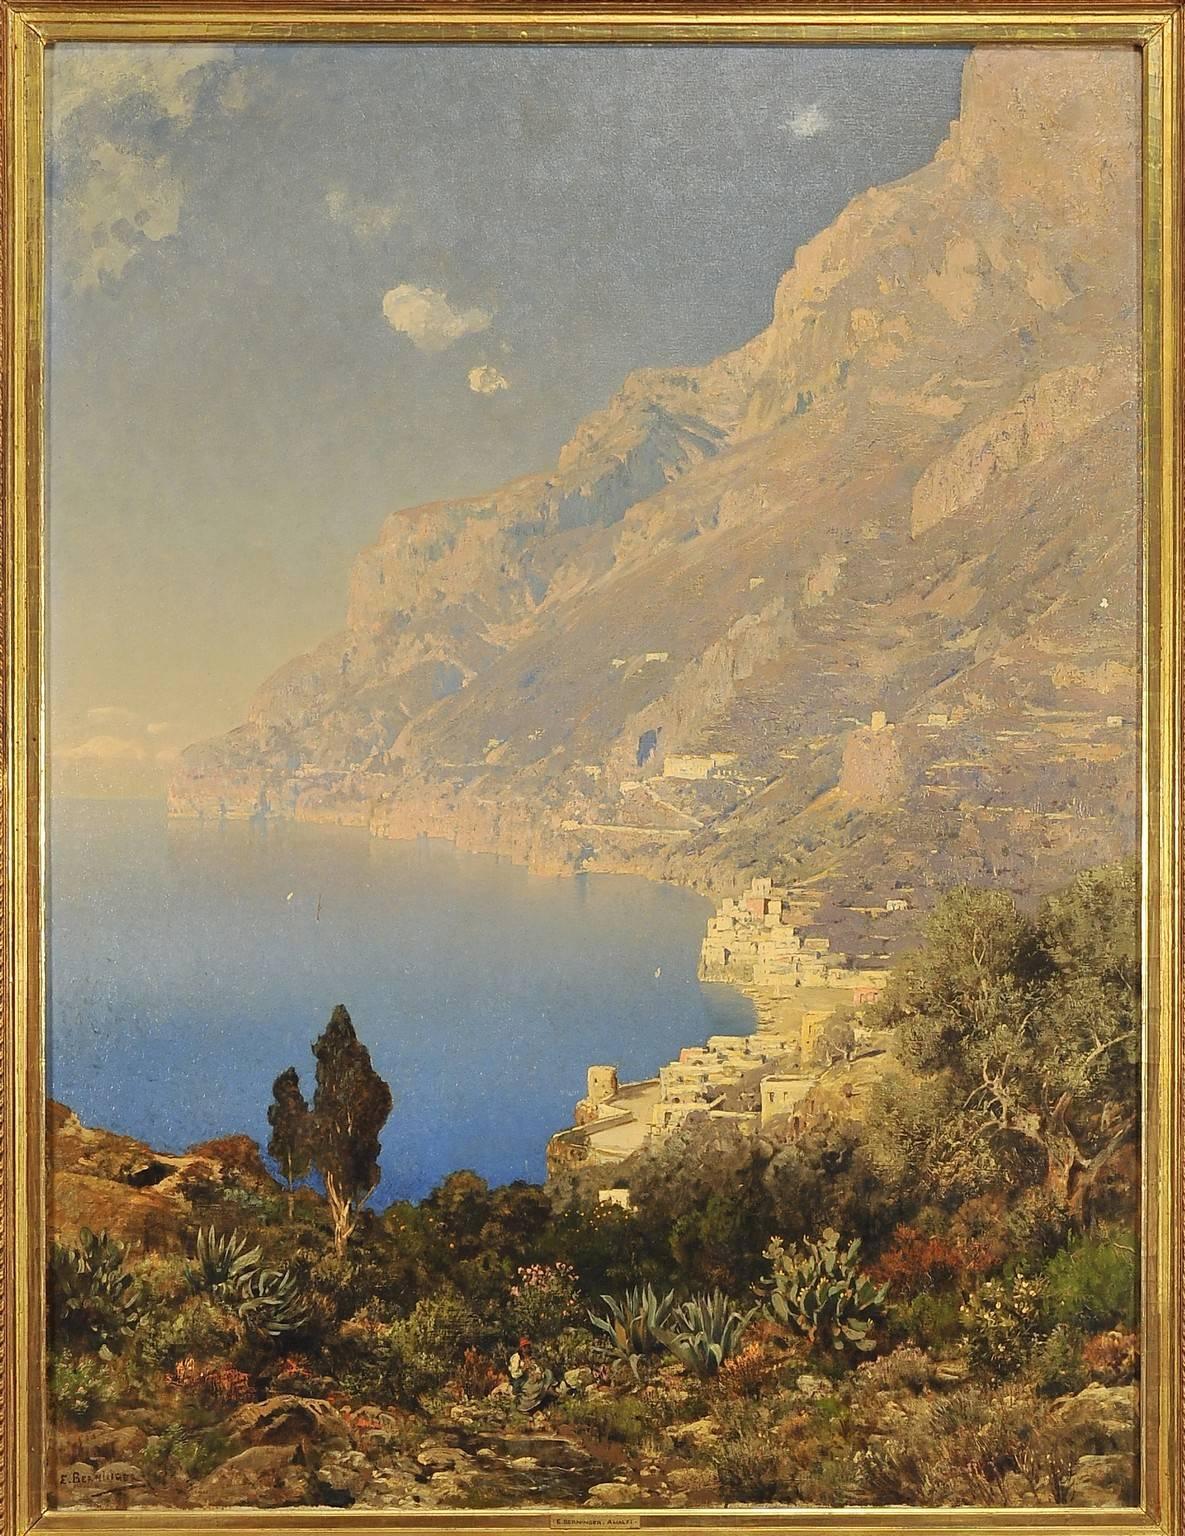 Edmund Berninger (1843-1929), oil on canvas signed lower left in the original frame.
